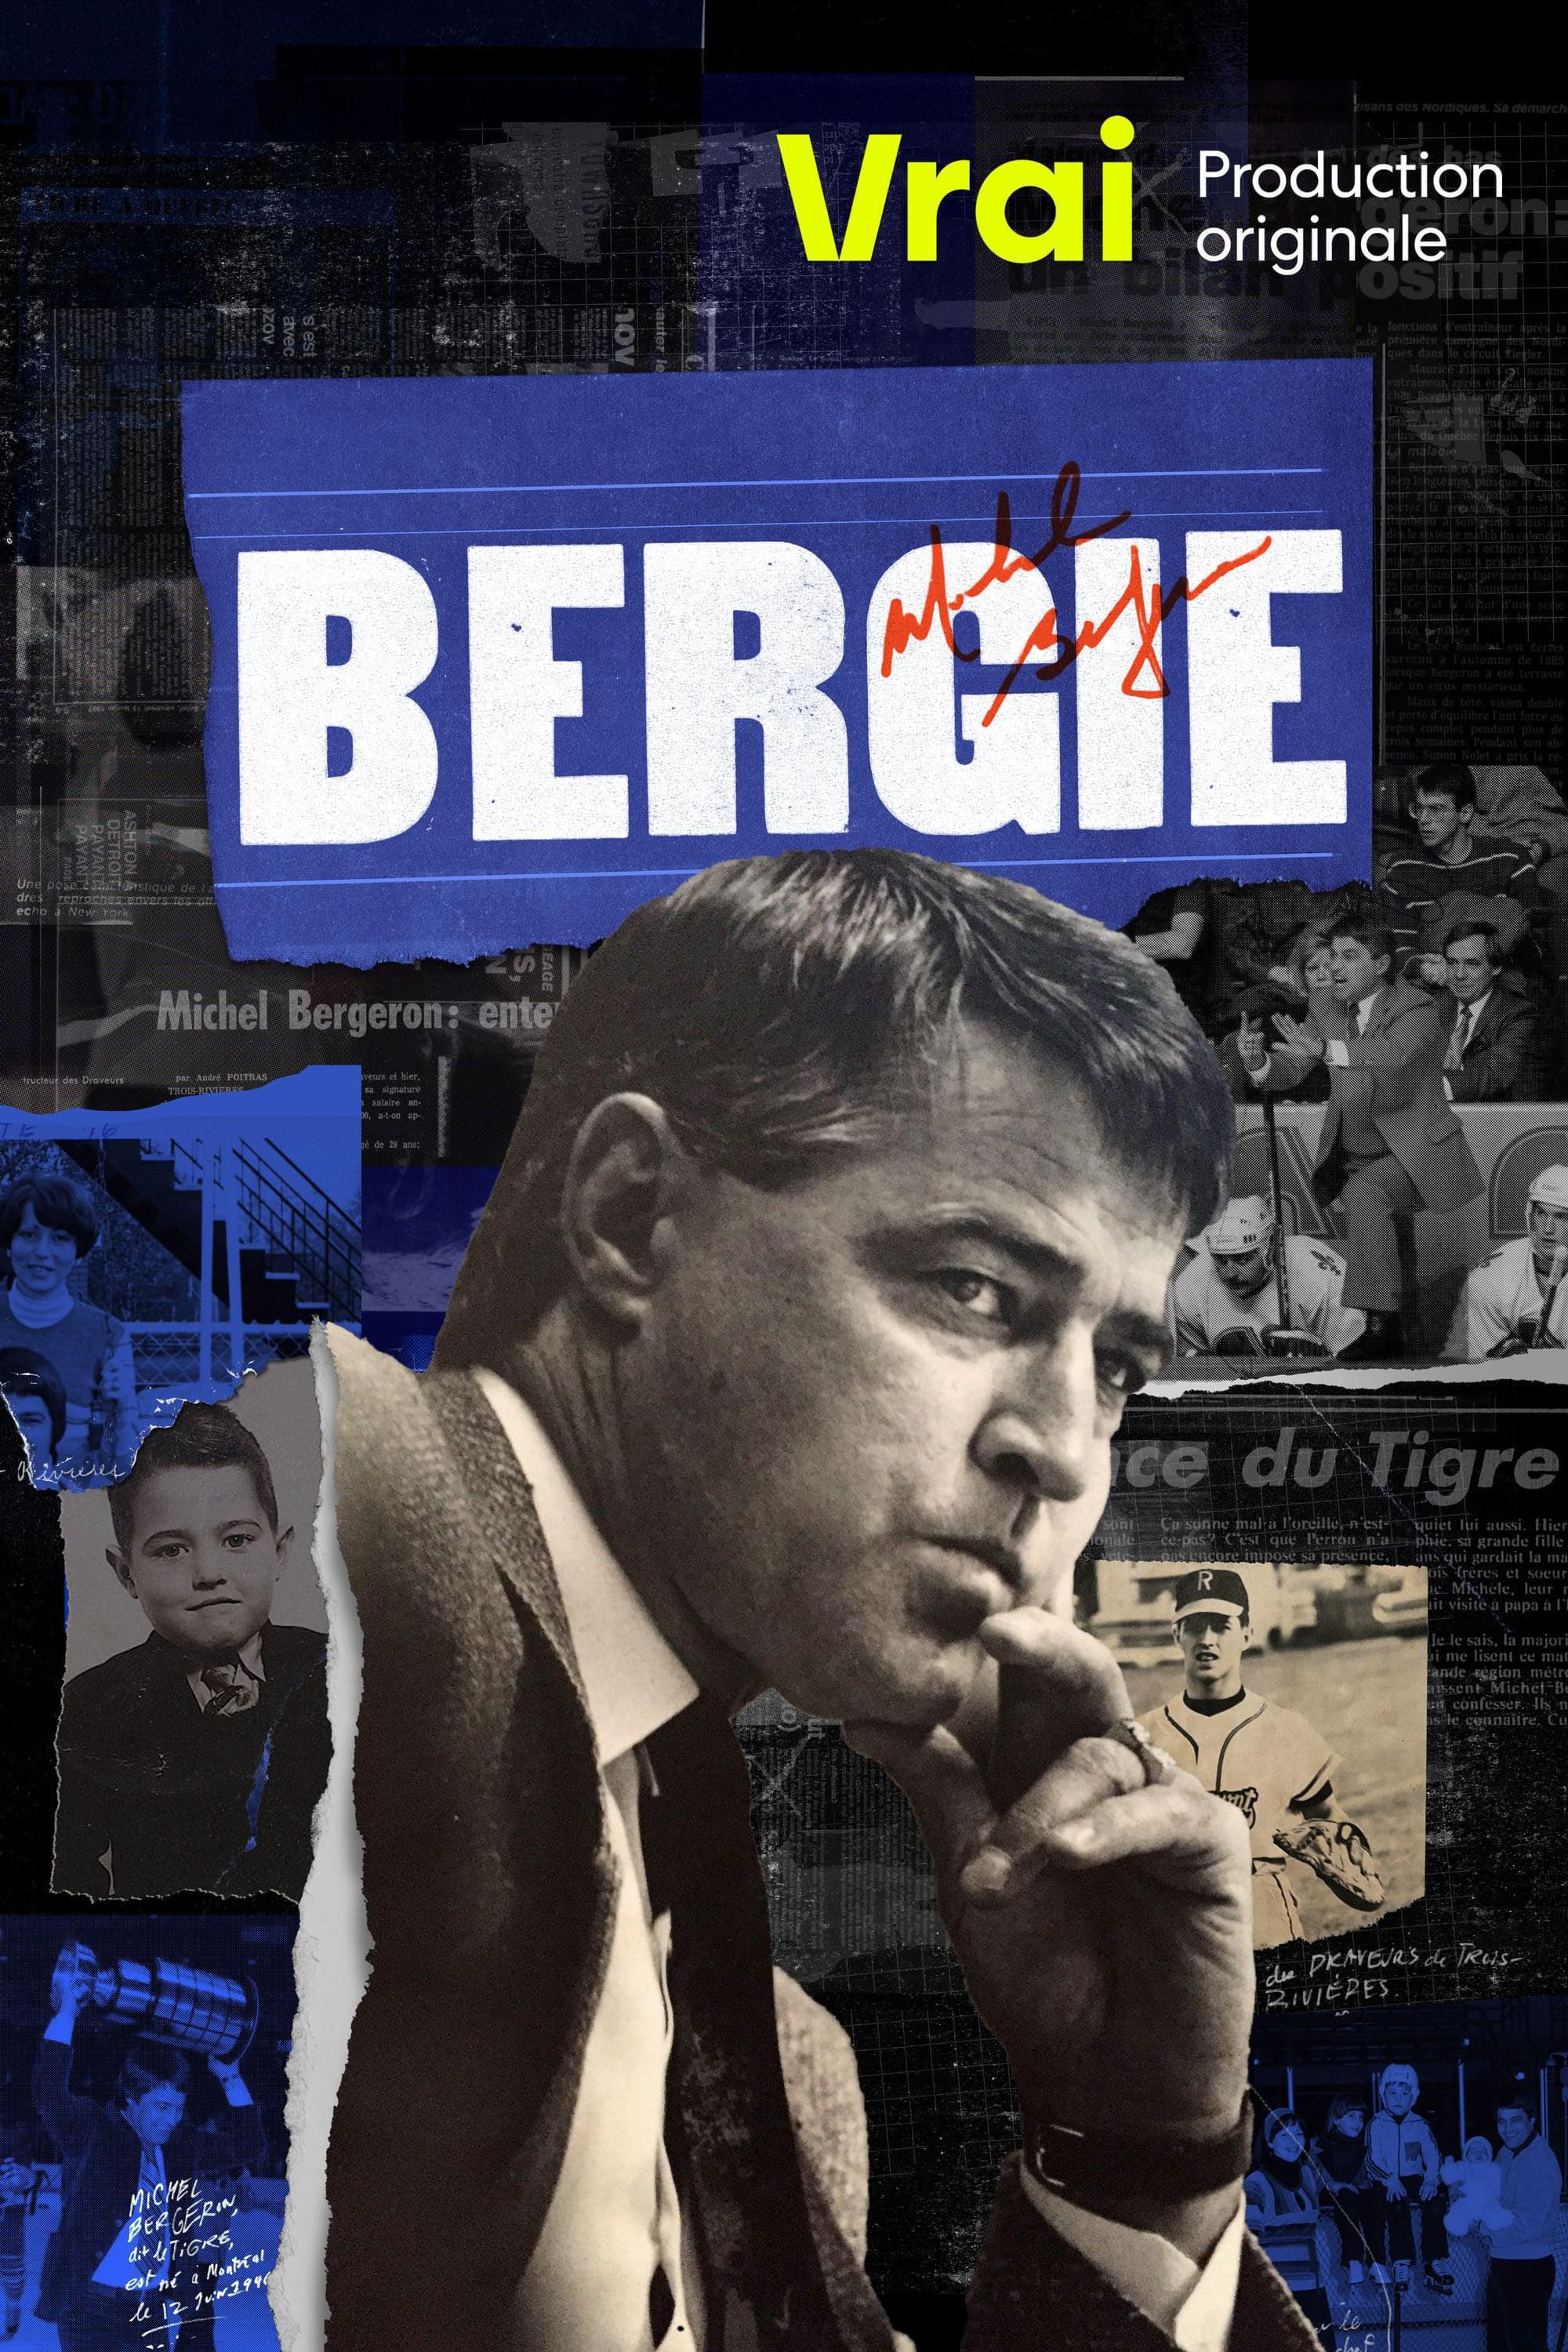 TV ratings for Bergie in France. Vrai TV series